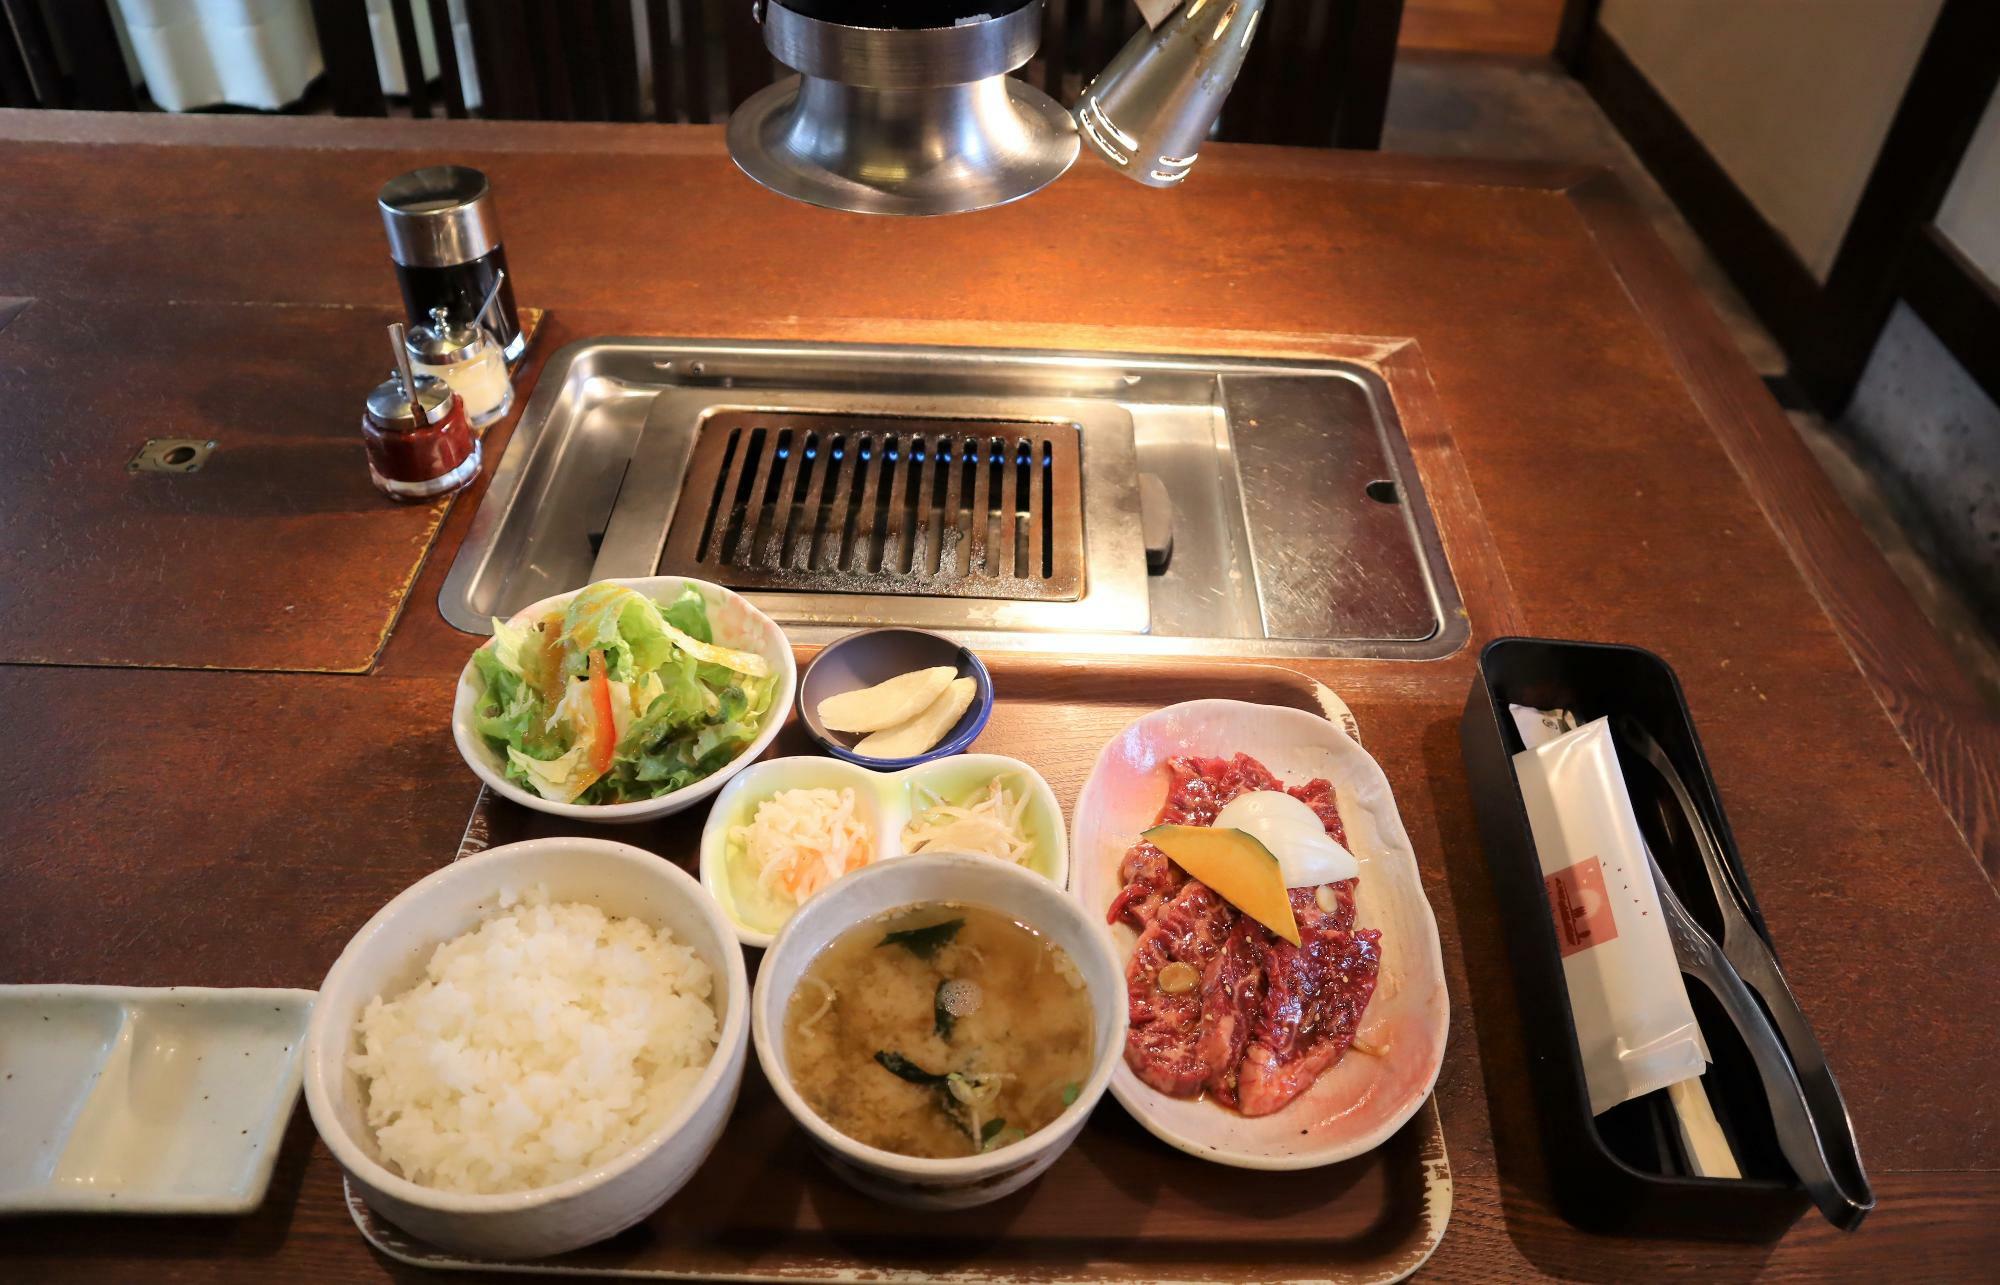 タレ付き肉、ライス、みそ汁、サラダ、なます、もやしナムル、肉には焼野菜、、漬物のセットです。＋８０円でご飯大盛り可能です。